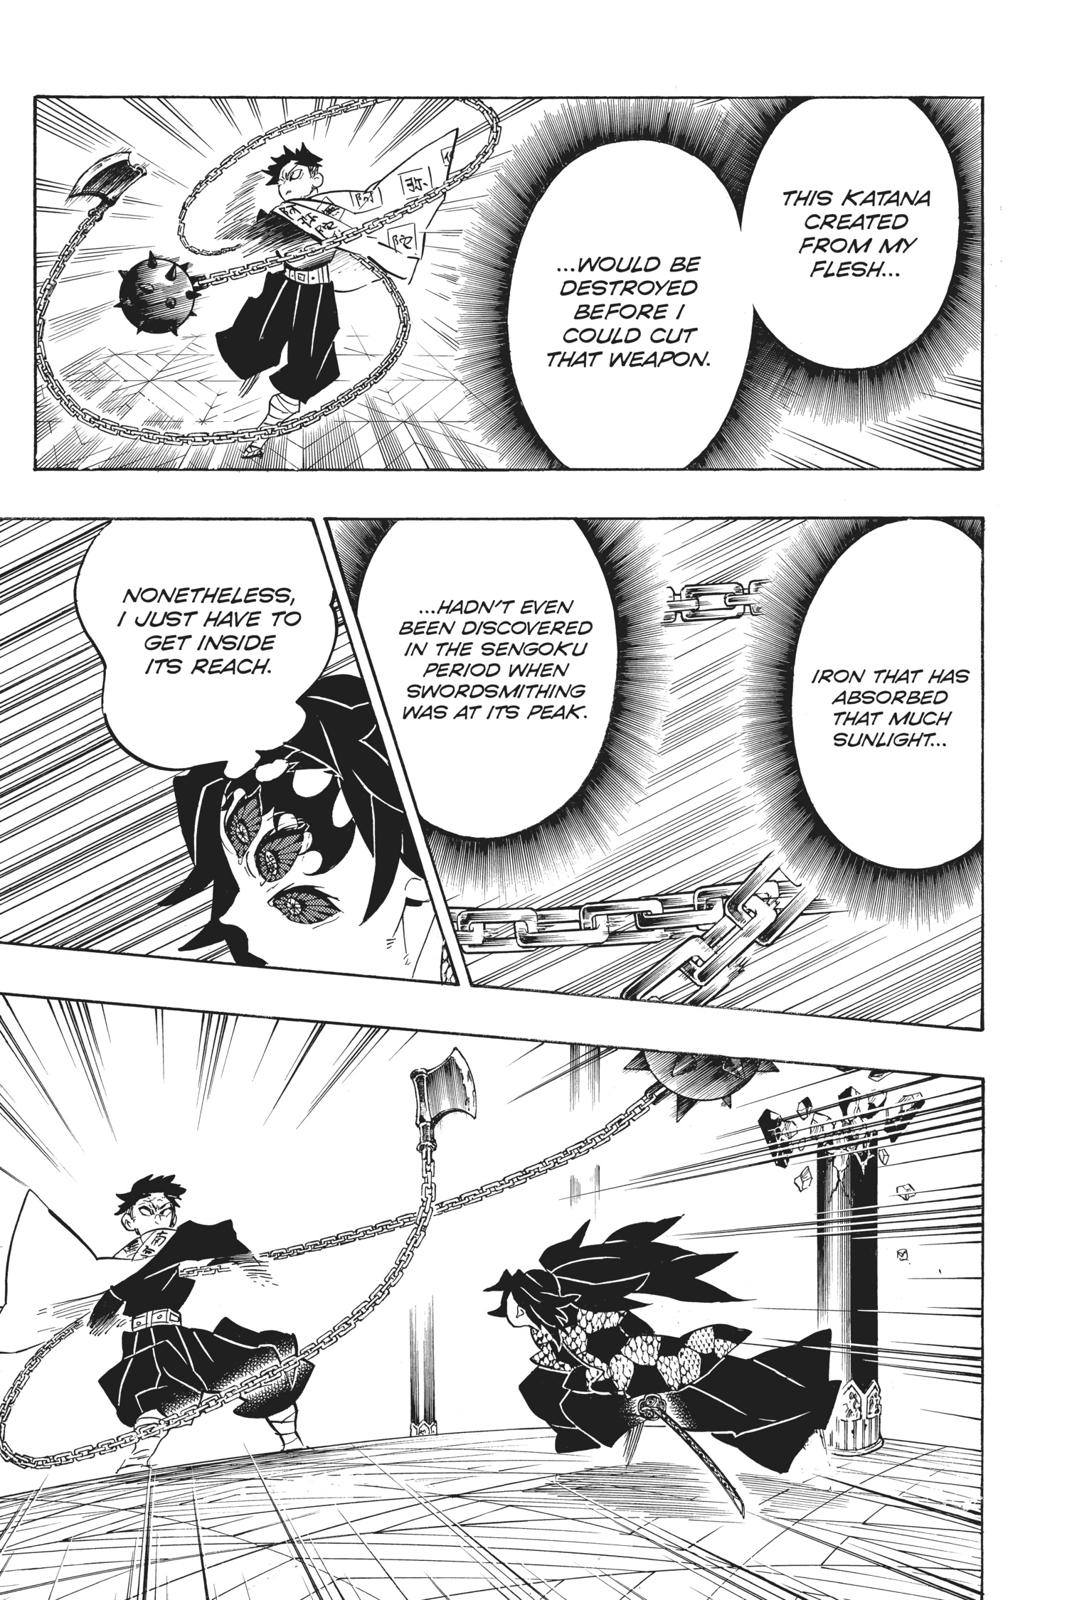 Demon Slayer Manga Manga Chapter - 169 - image 11